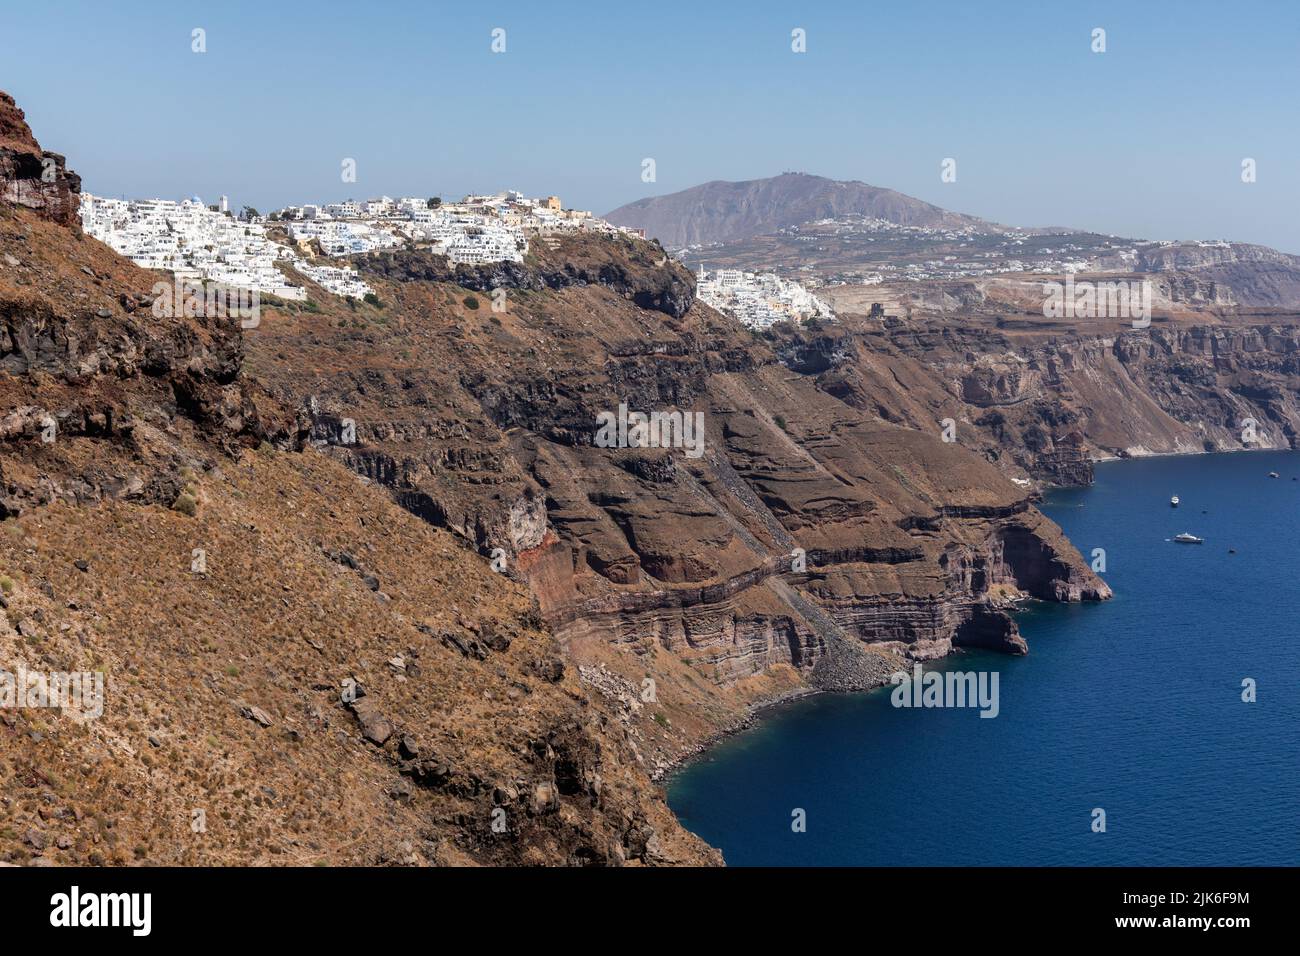 Vista desde Skaros Rock del paisaje volcánico de la caldera, la ciudad de Fira y el mar Egeo, Imerovigli, Santorini, Grecia, Europa Foto de stock